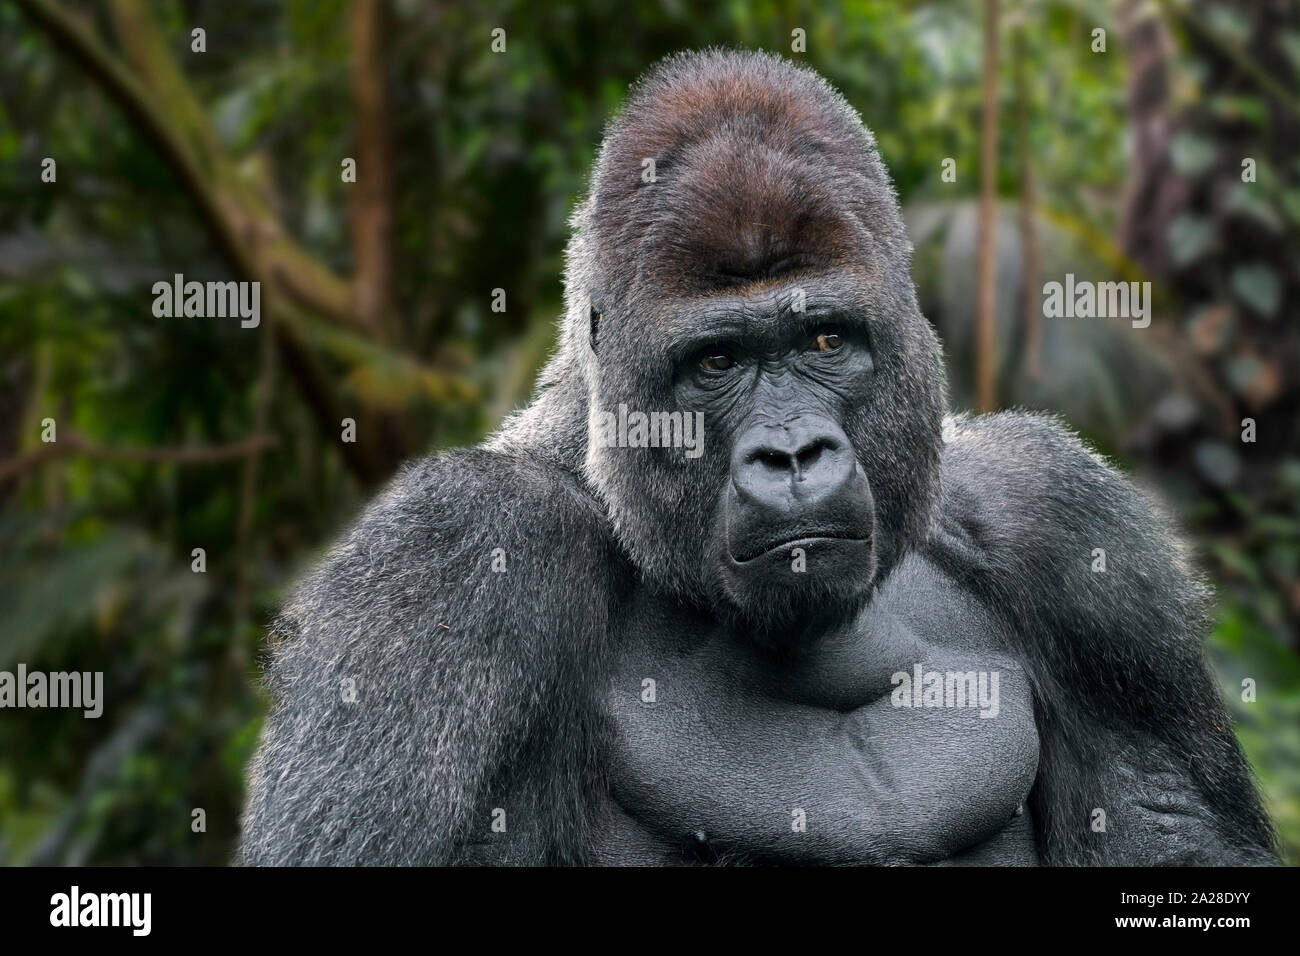 Gorille des basses terres de l'Ouest (Gorilla gorilla gorilla) silverback mâle originaire de la forêt tropicale en Afrique centrale.Composite numérique. Banque D'Images